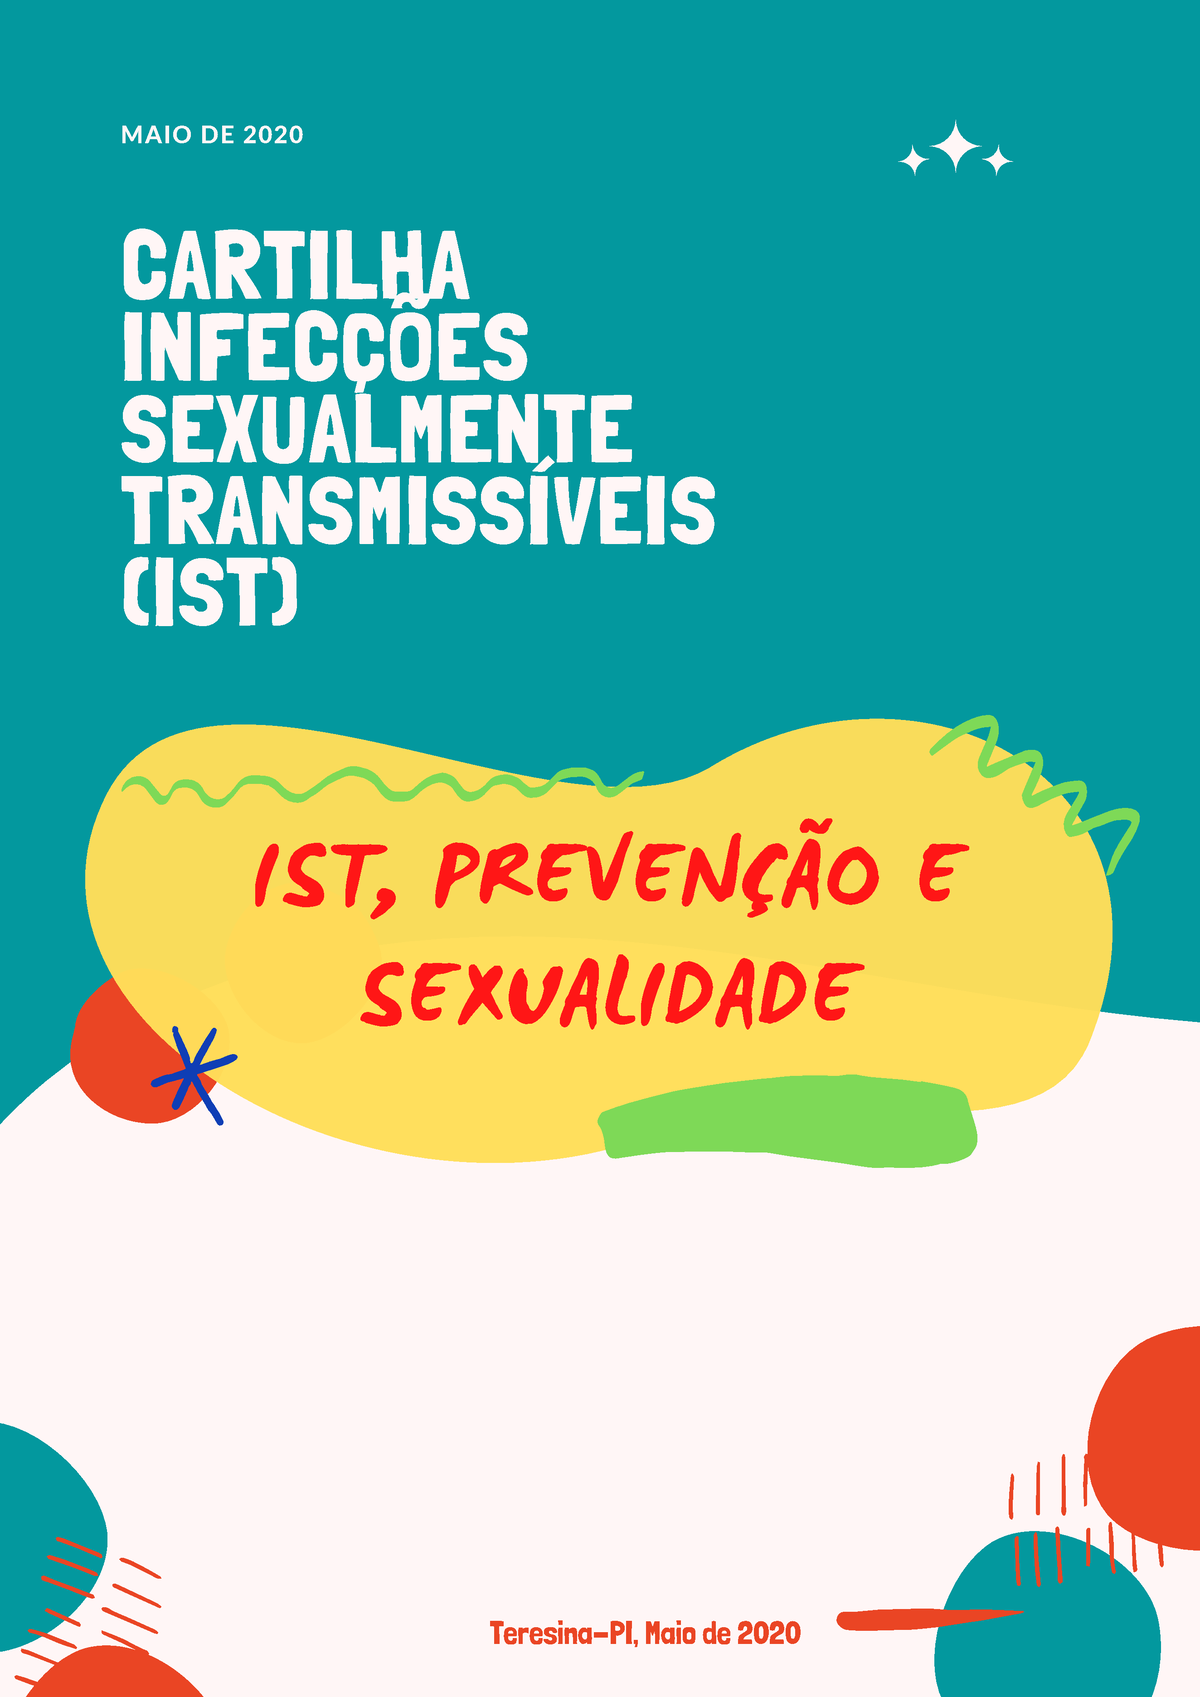 Cartilha Infeccoes Sexualmente Transmissiveis Ist Compressed 202006 10132403 Maio De 2020 1413